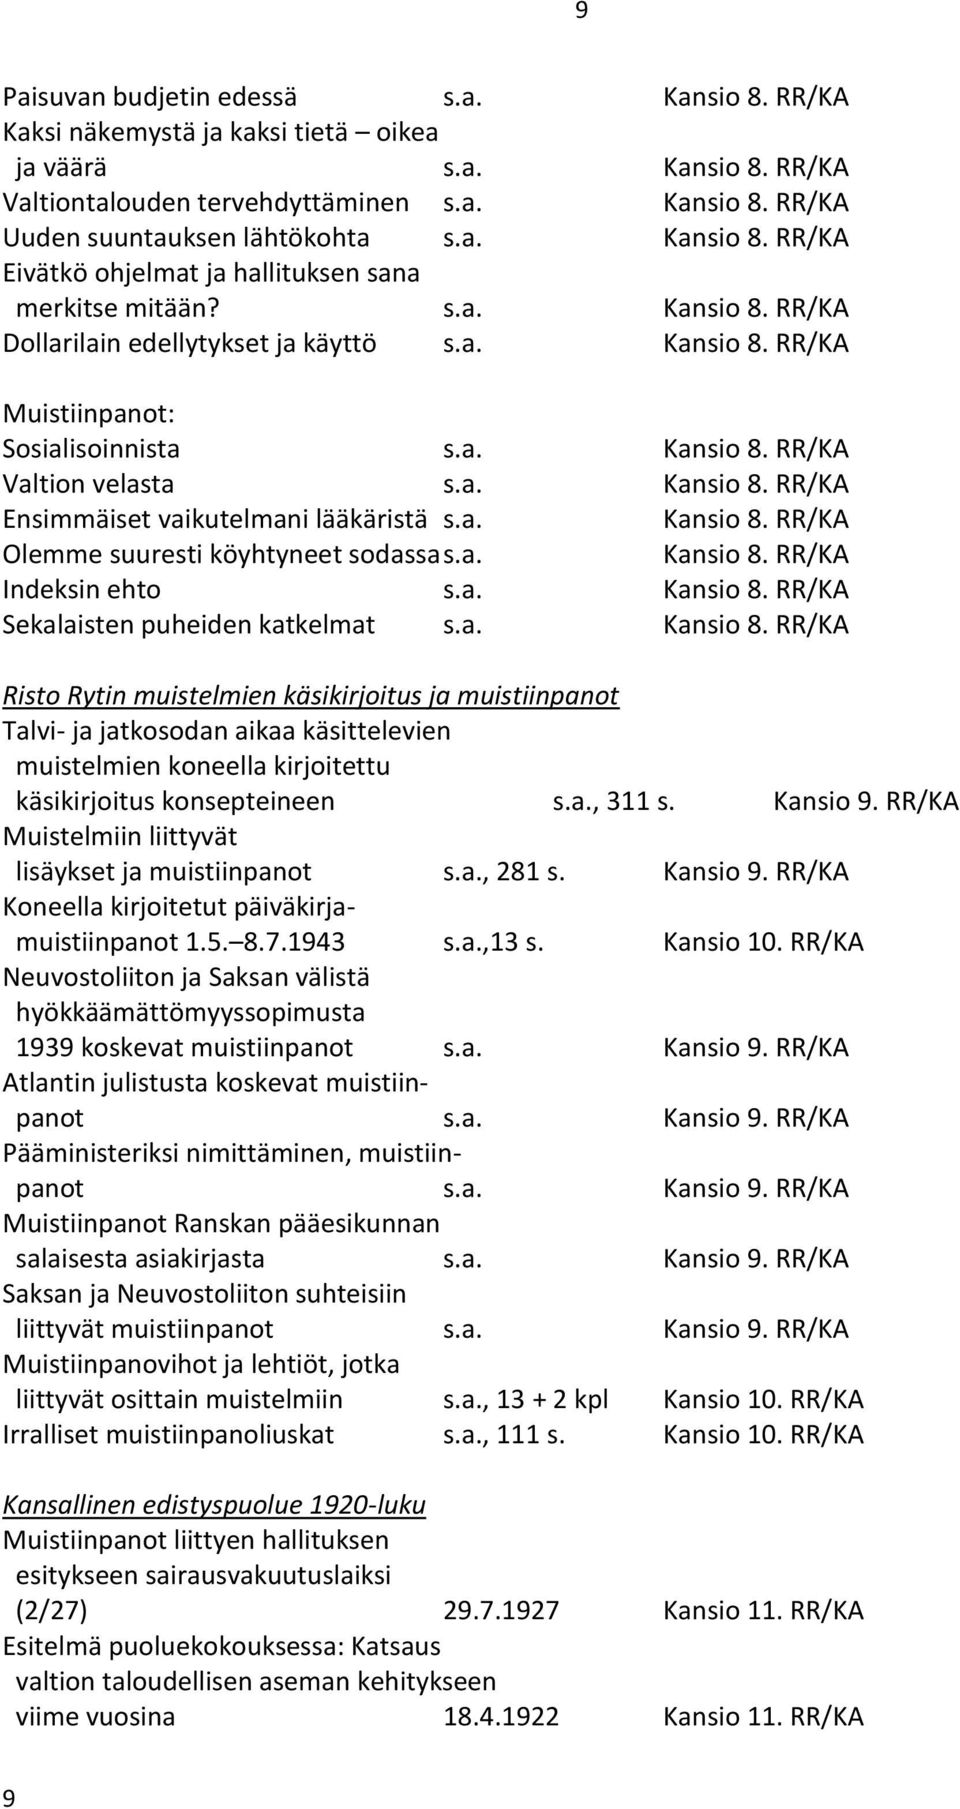 a. Kansio 8. RR/KA Ensimmäiset vaikutelmani lääkäristä s.a. Kansio 8. RR/KA Olemme suuresti köyhtyneet sodassa s.a. Kansio 8. RR/KA Indeksin ehto s.a. Kansio 8. RR/KA Sekalaisten puheiden katkelmat s.